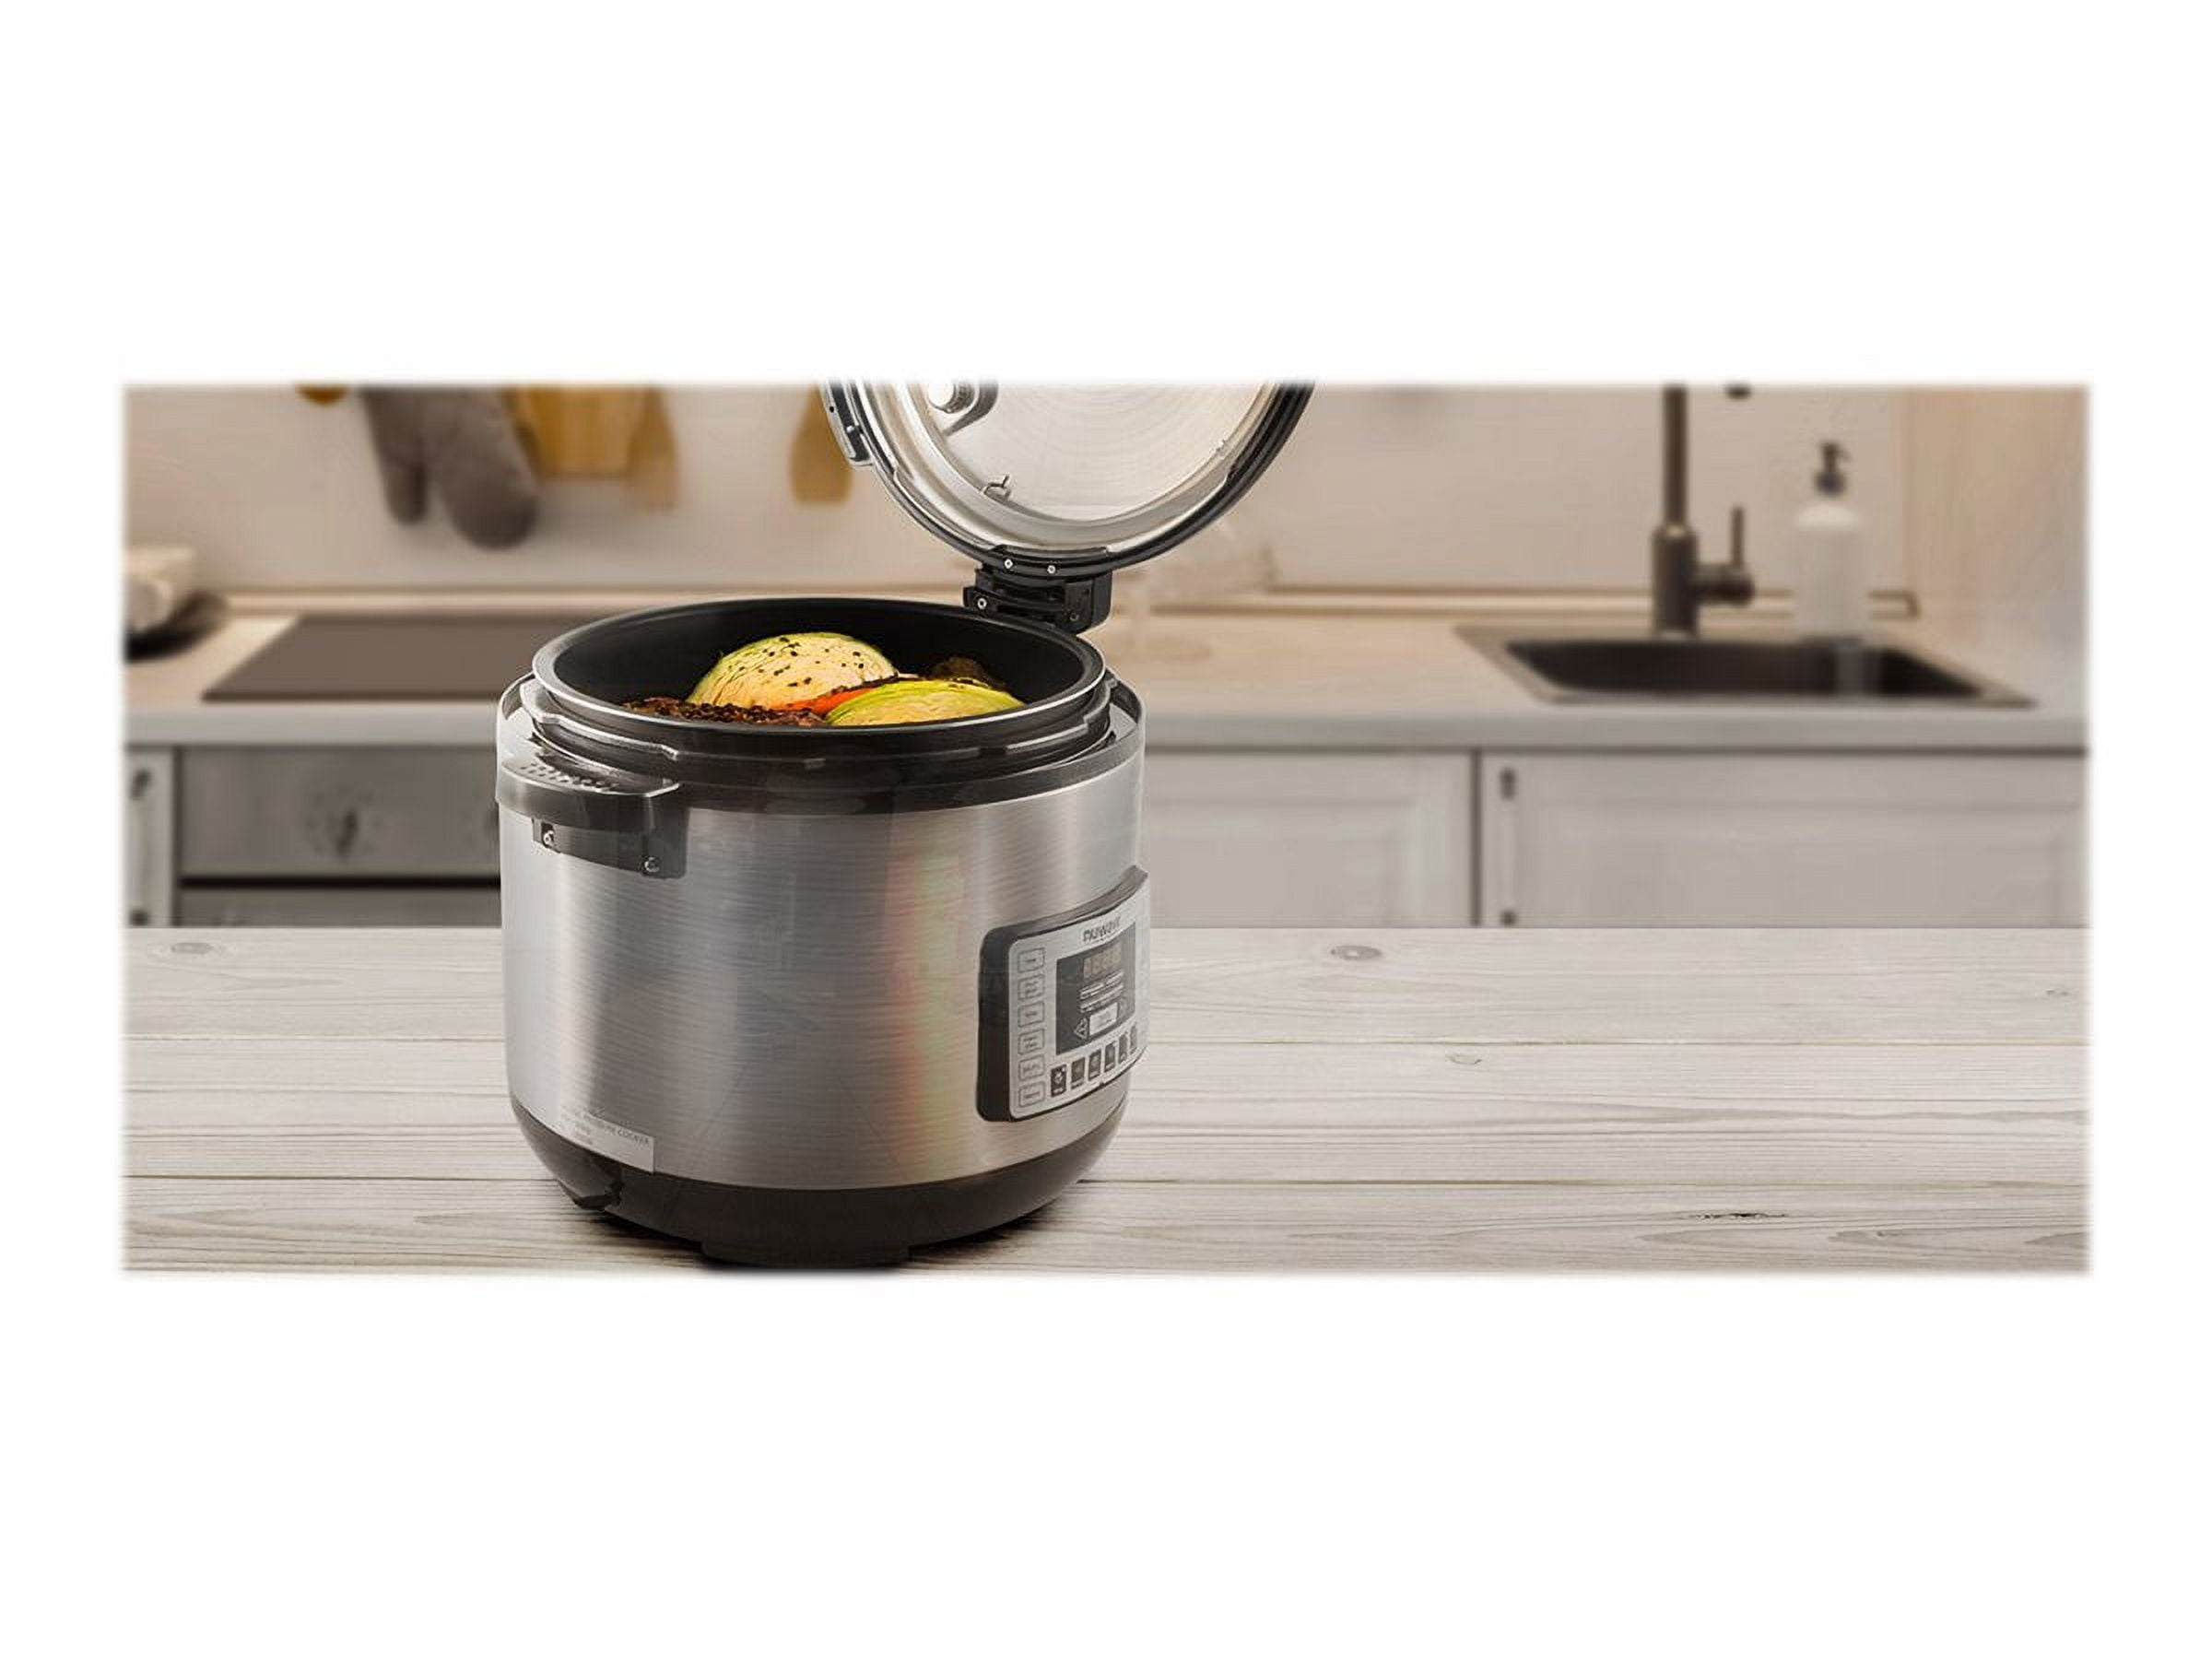  NUWAVE Nutri-Pot 6-Quart Digital Pressure Cooker with Sure-Lock  Safety System; Dishwasher-Safe Non-Stick Inner Pot; 11 Pre-Programmed  Presets; Detachable Pressure Pot Lid for Easy Cleaning; (6-Quart): Home &  Kitchen